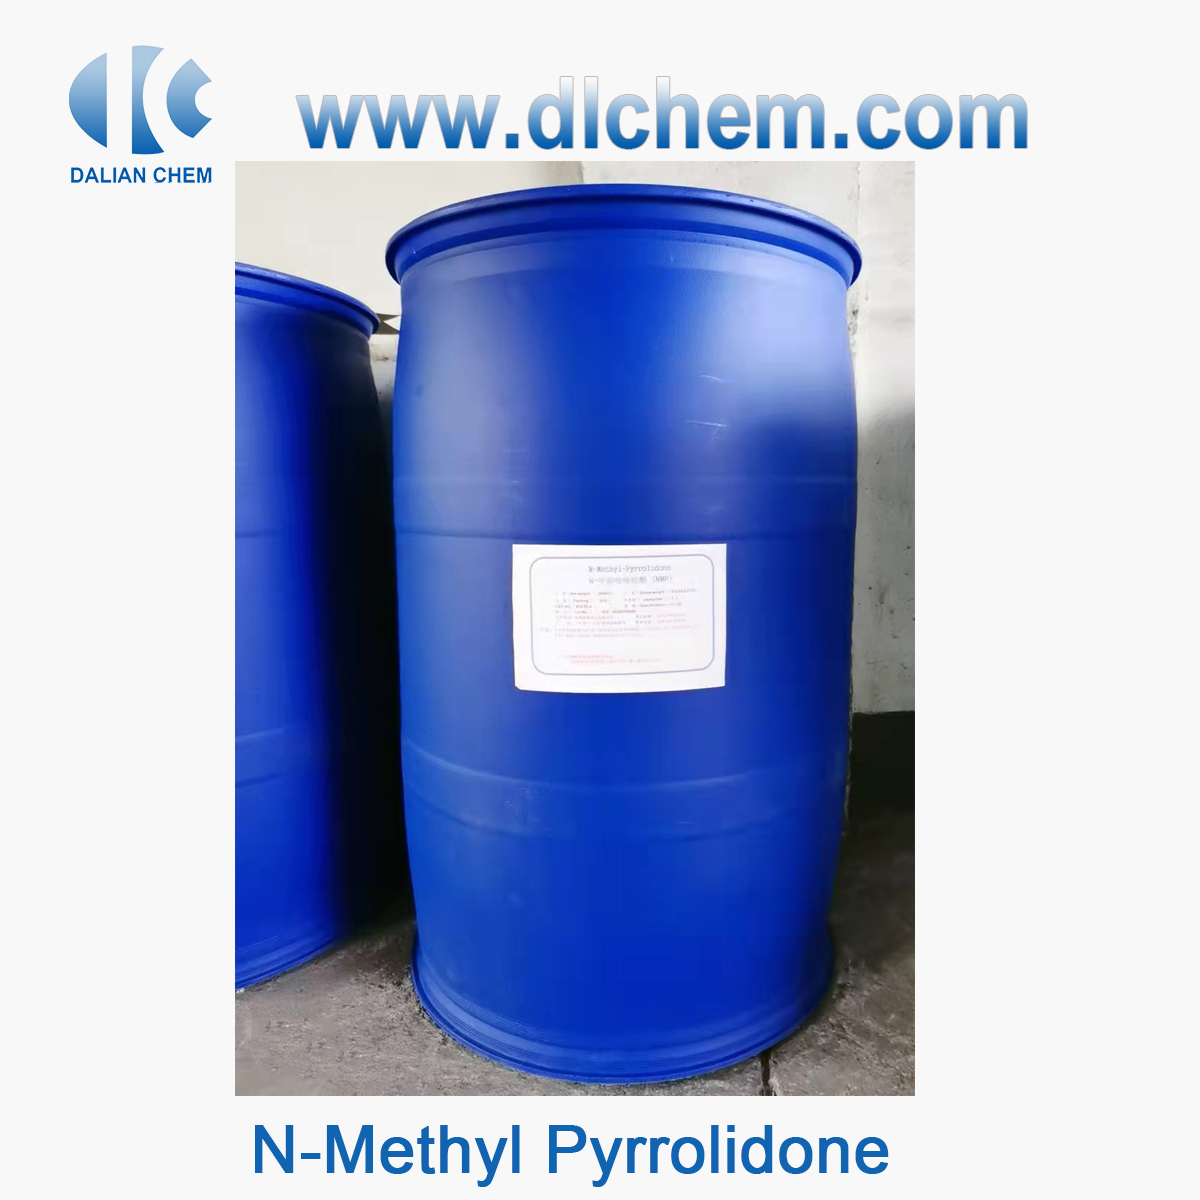 N-Methyl Pyrrolidone CAS No.872-50-4